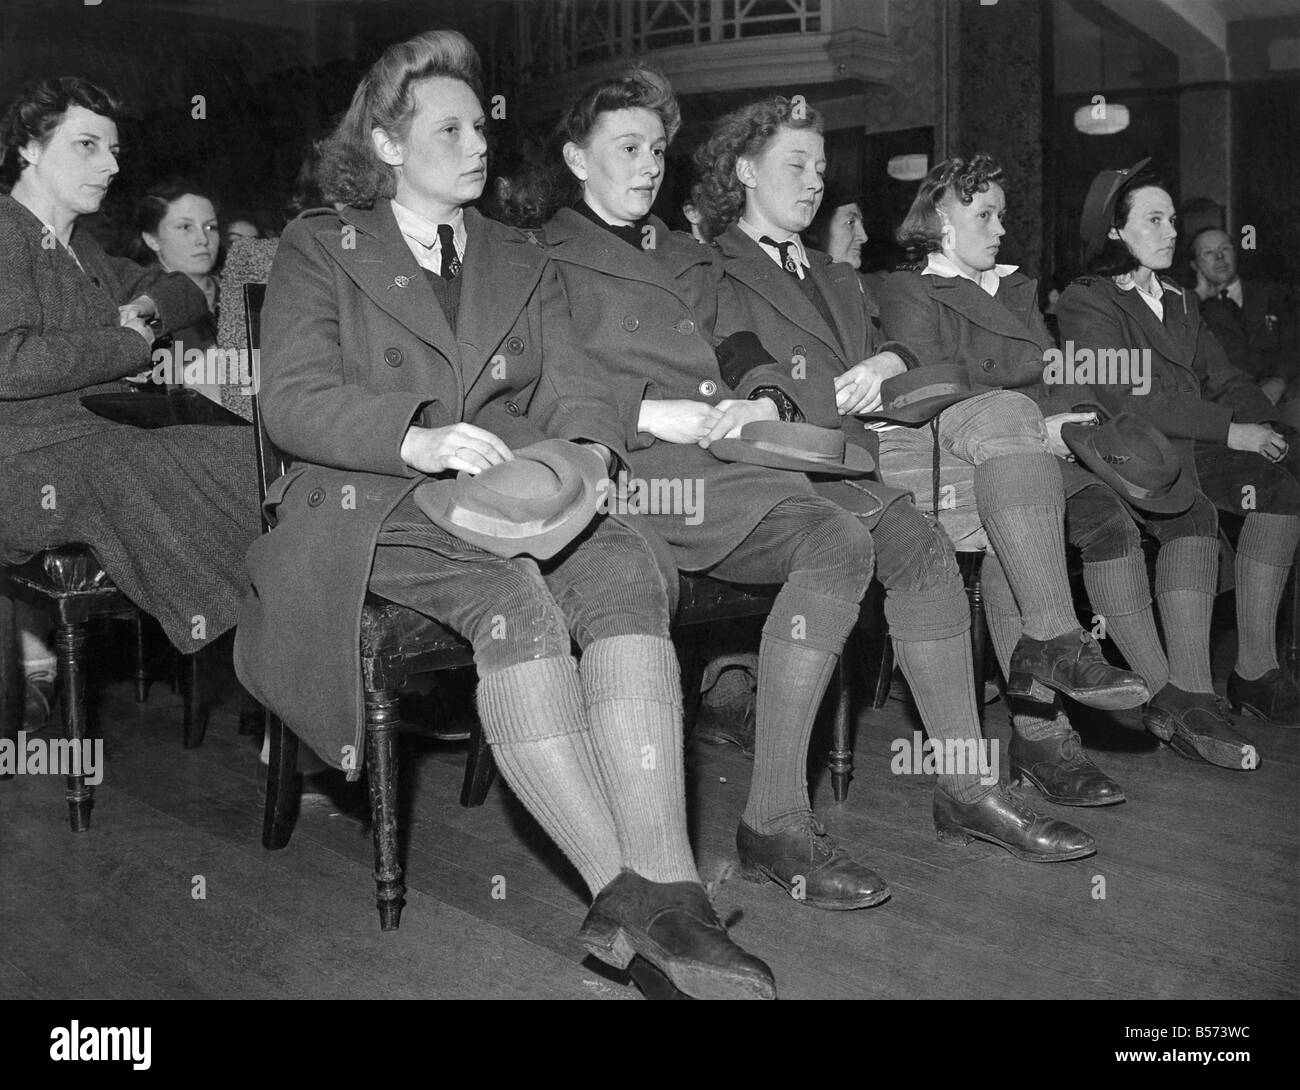 Première Guerre de toutes les femmes de Résonance agricole tenue à la tête de taureau, Aylesbury, avril 6th, 1943. Women's Land Army très Banque D'Images